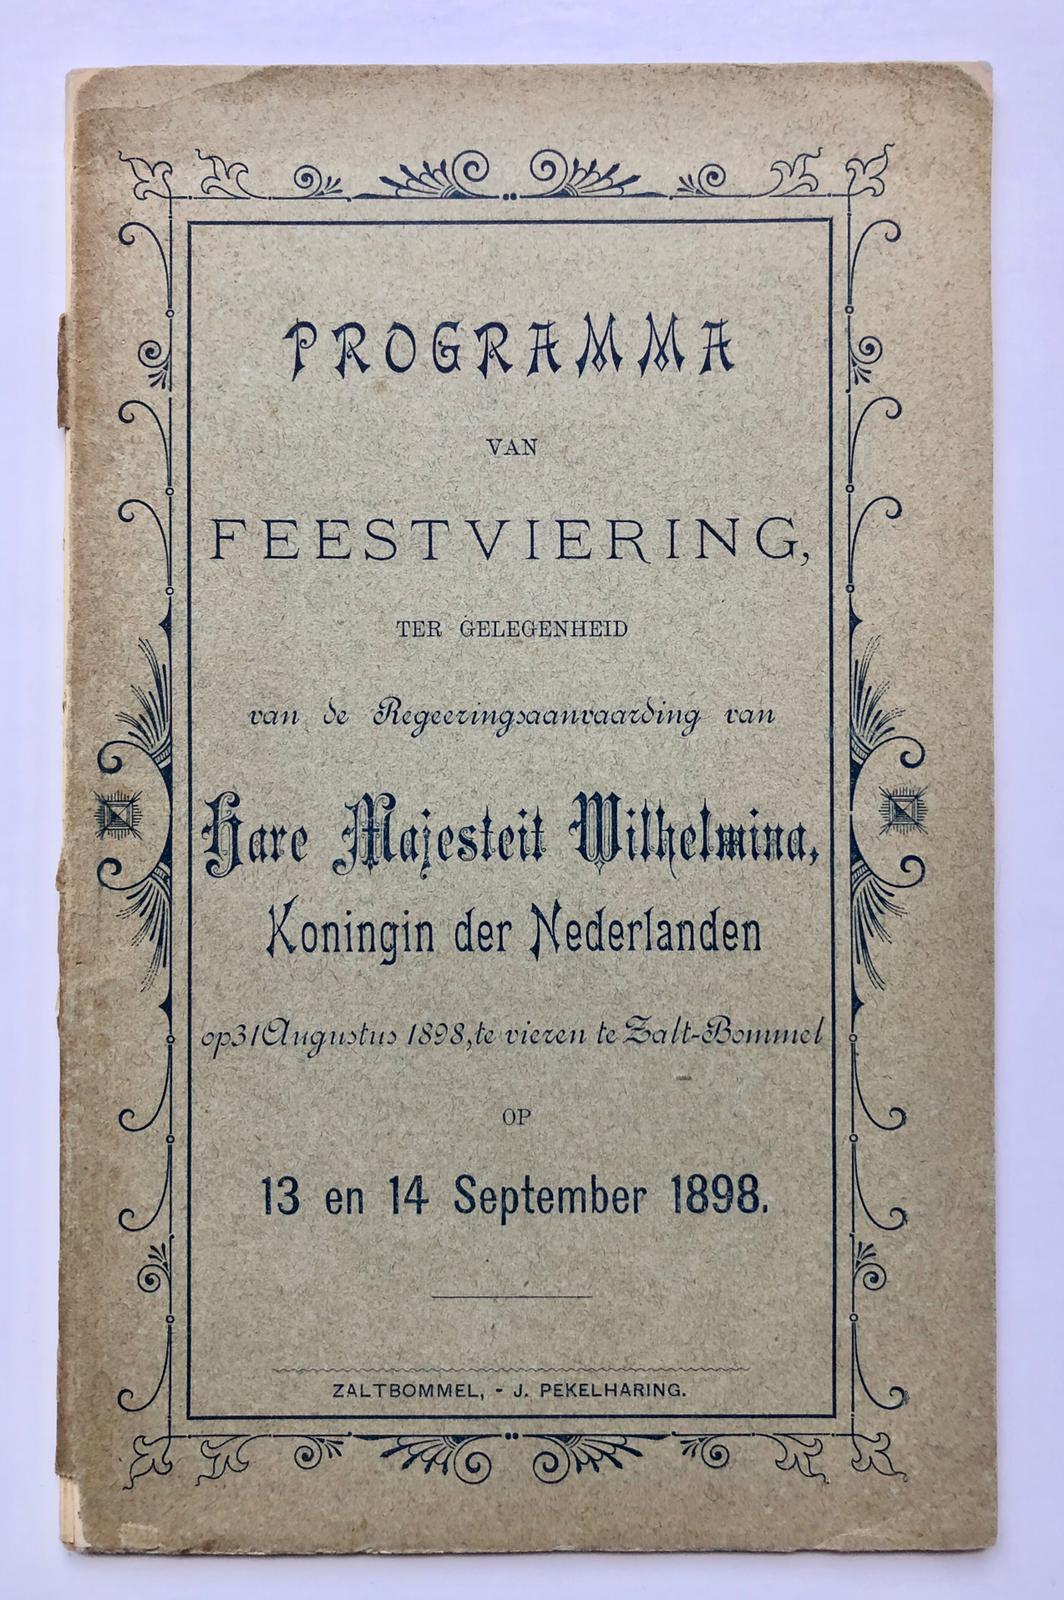  - [Printed publication, birthday Queen Wilhelmina in Zaltbommel, 1898] Programma van feestviering t.g.v. de regeringsaanvaarding van H.M. Wilhelmina op 31 augustus 1898 te vieren te Zalt-Bommel op 13 en 14 september 1898. Gedrukt, 36 pag.